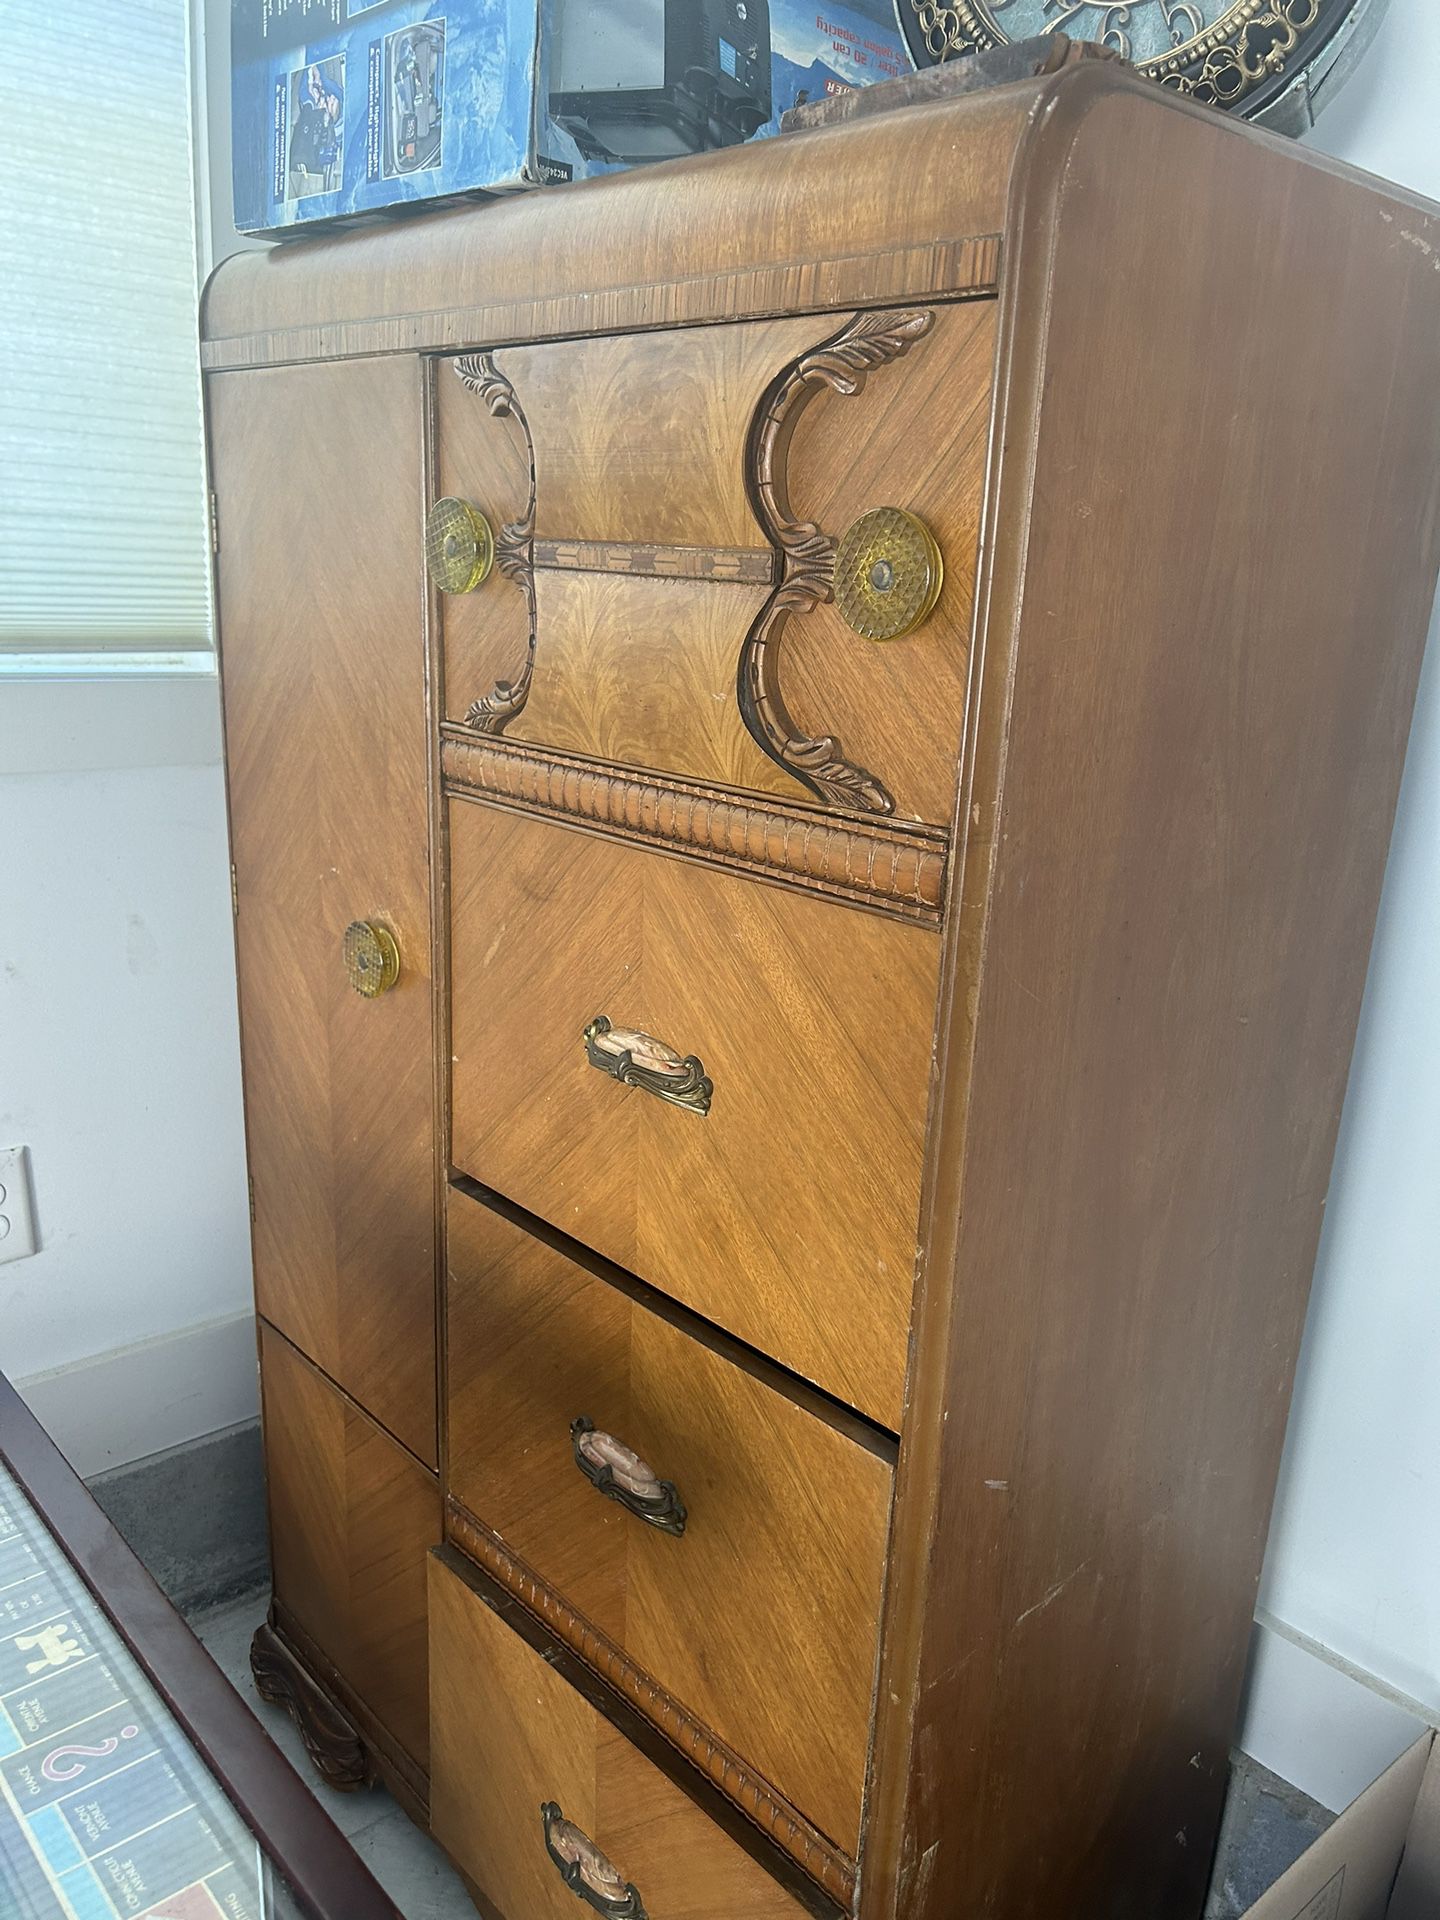 Antique Wood Dresser/ Wardrobe